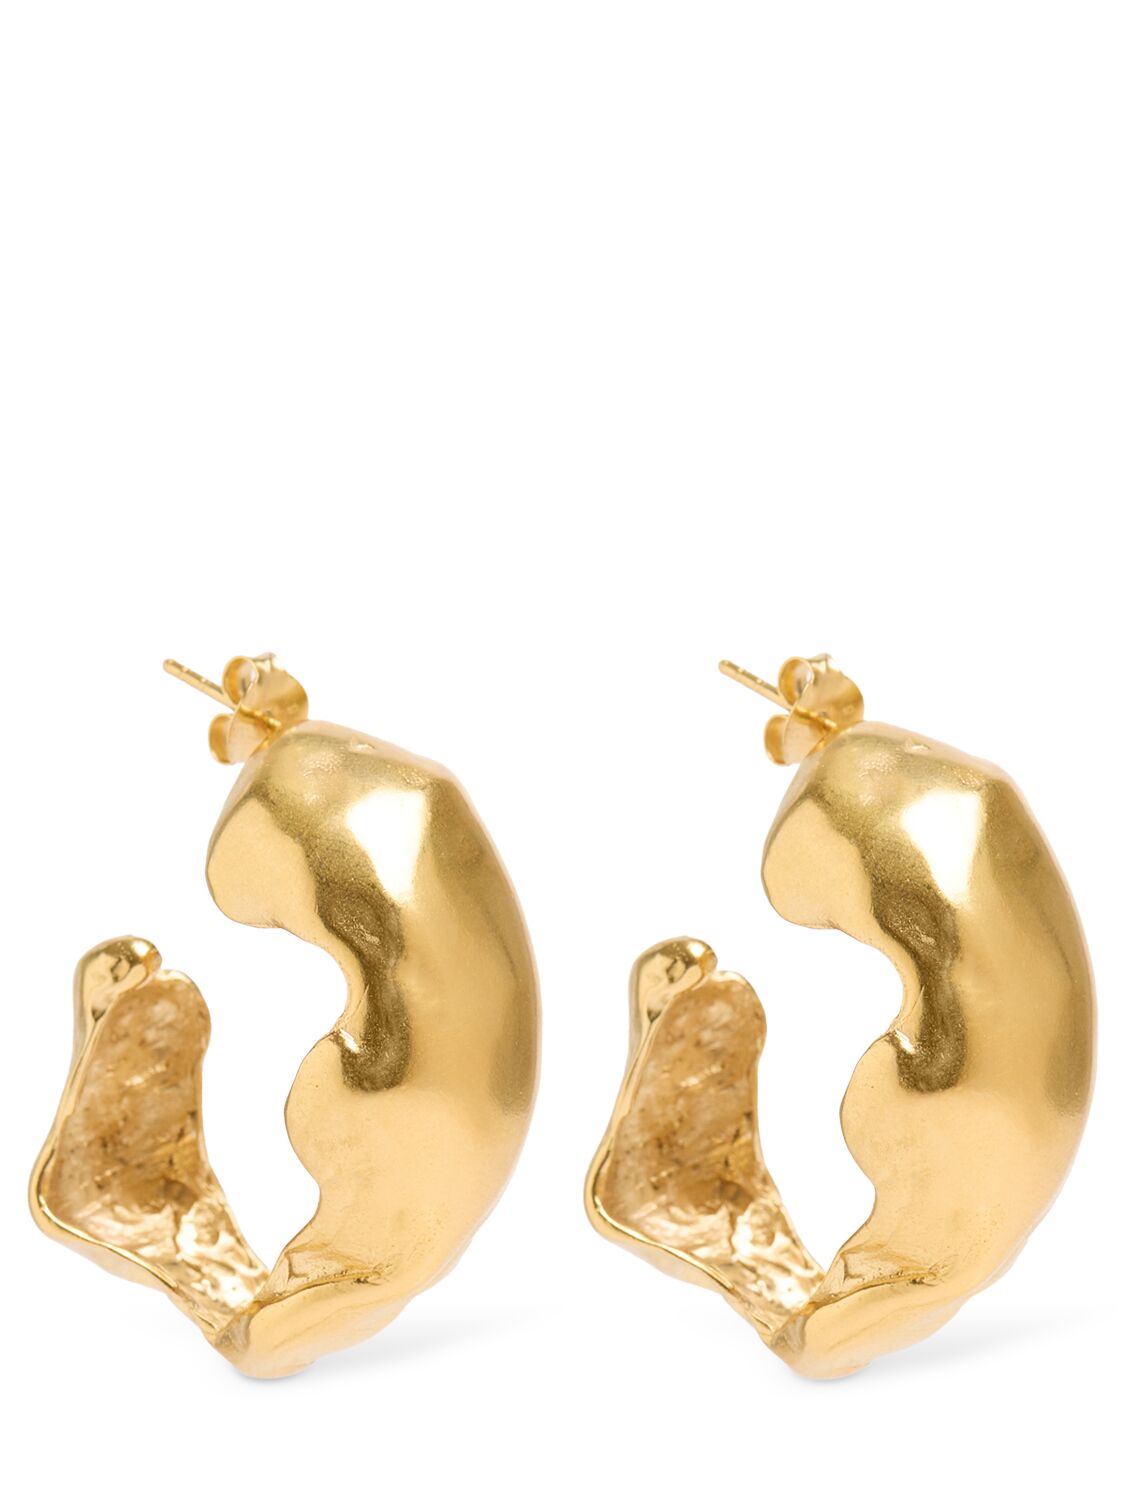 Simuero Pompas Hoop Earrings In Gold